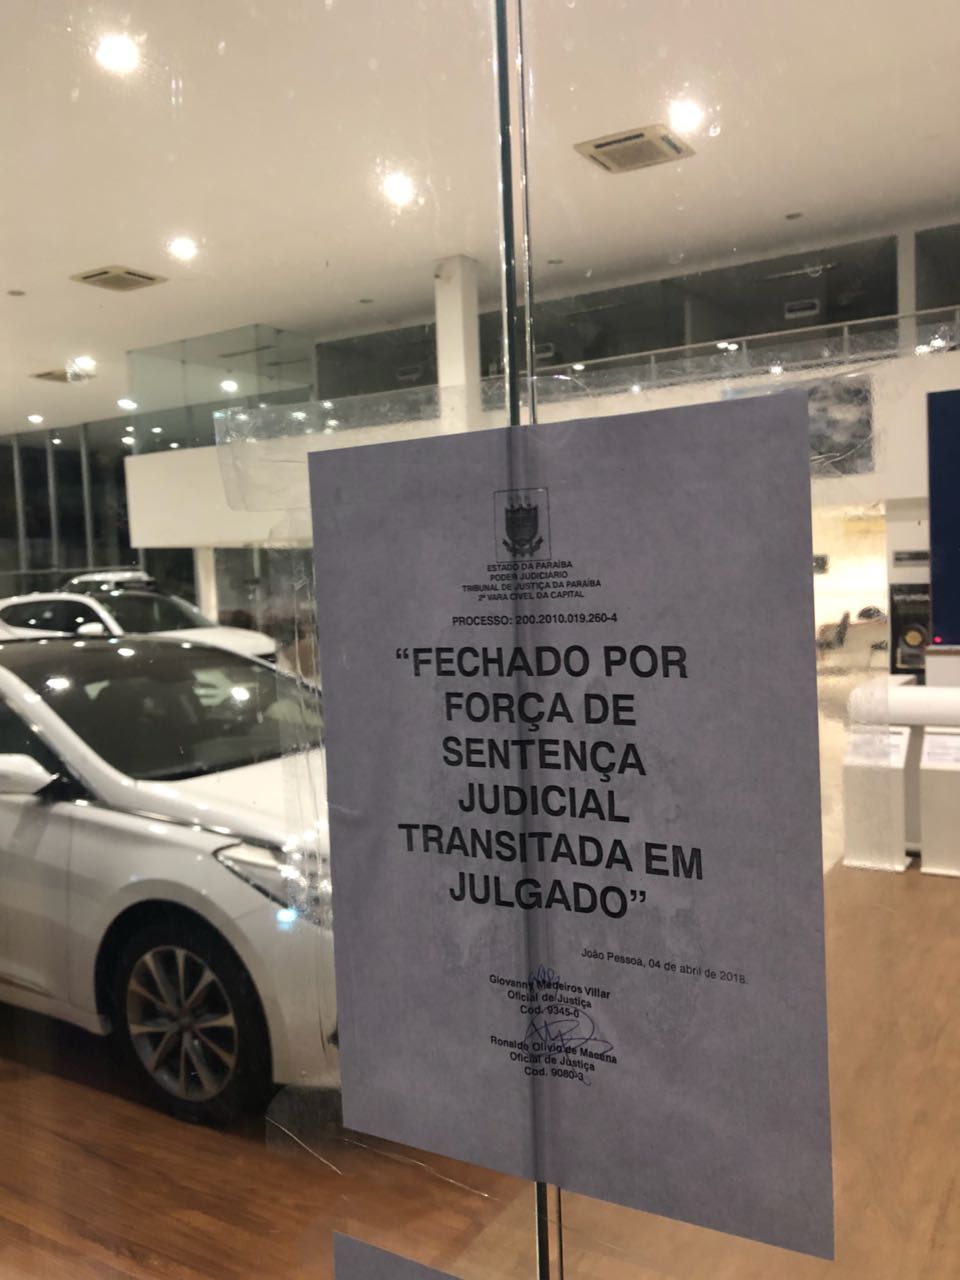 WhatsApp Image 2018 04 04 at 20.28.06 4 - CAOA DE PORTAS FECHADAS: Após longa disputa judicial concessionária tem portas lacradas e veículos sequestrados